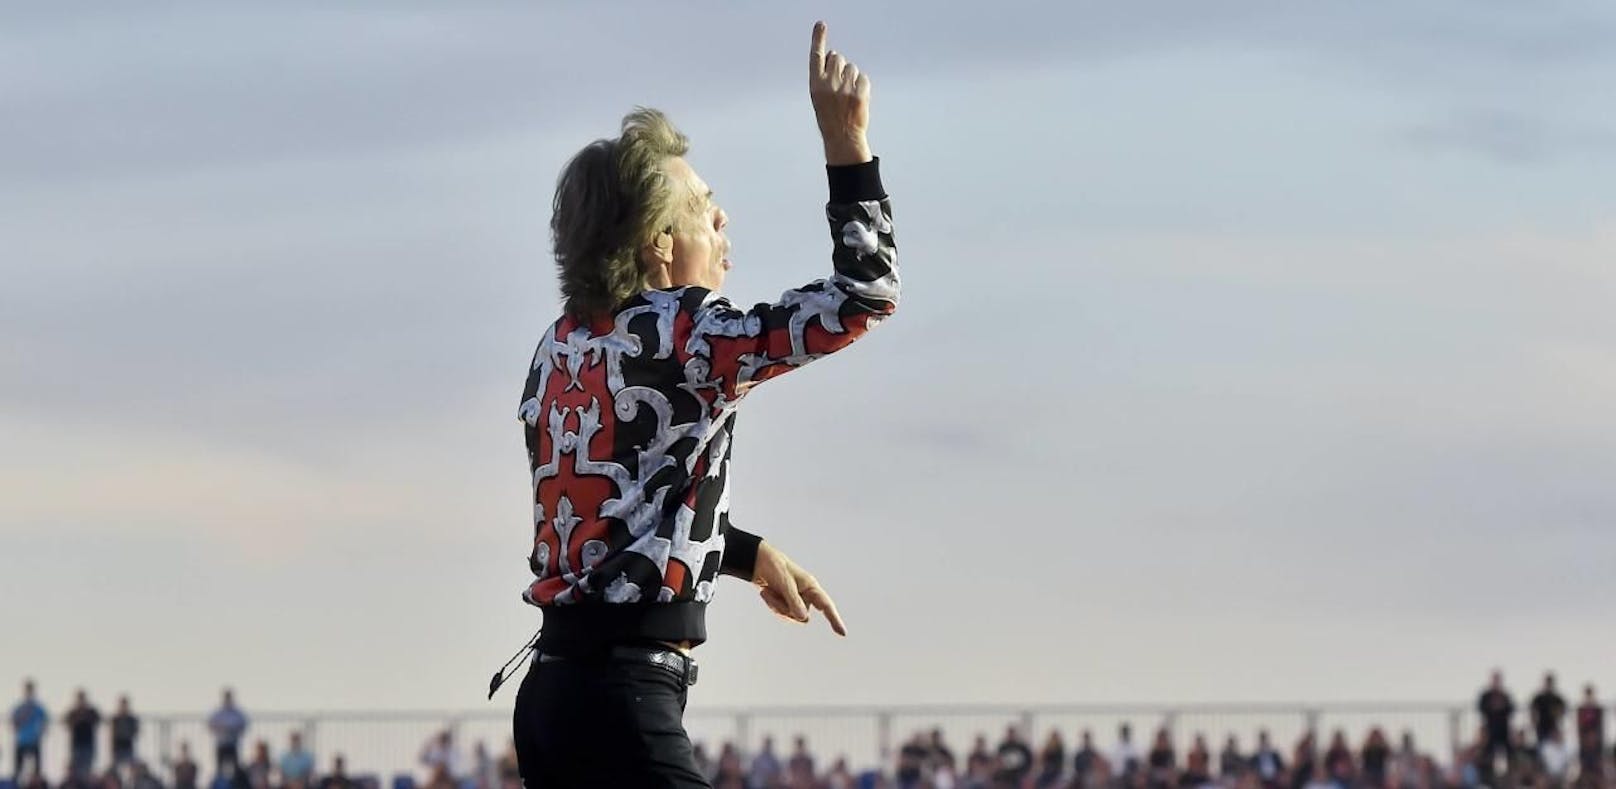 Sorge um Mick Jagger – "Stones" sagen Tournee ab